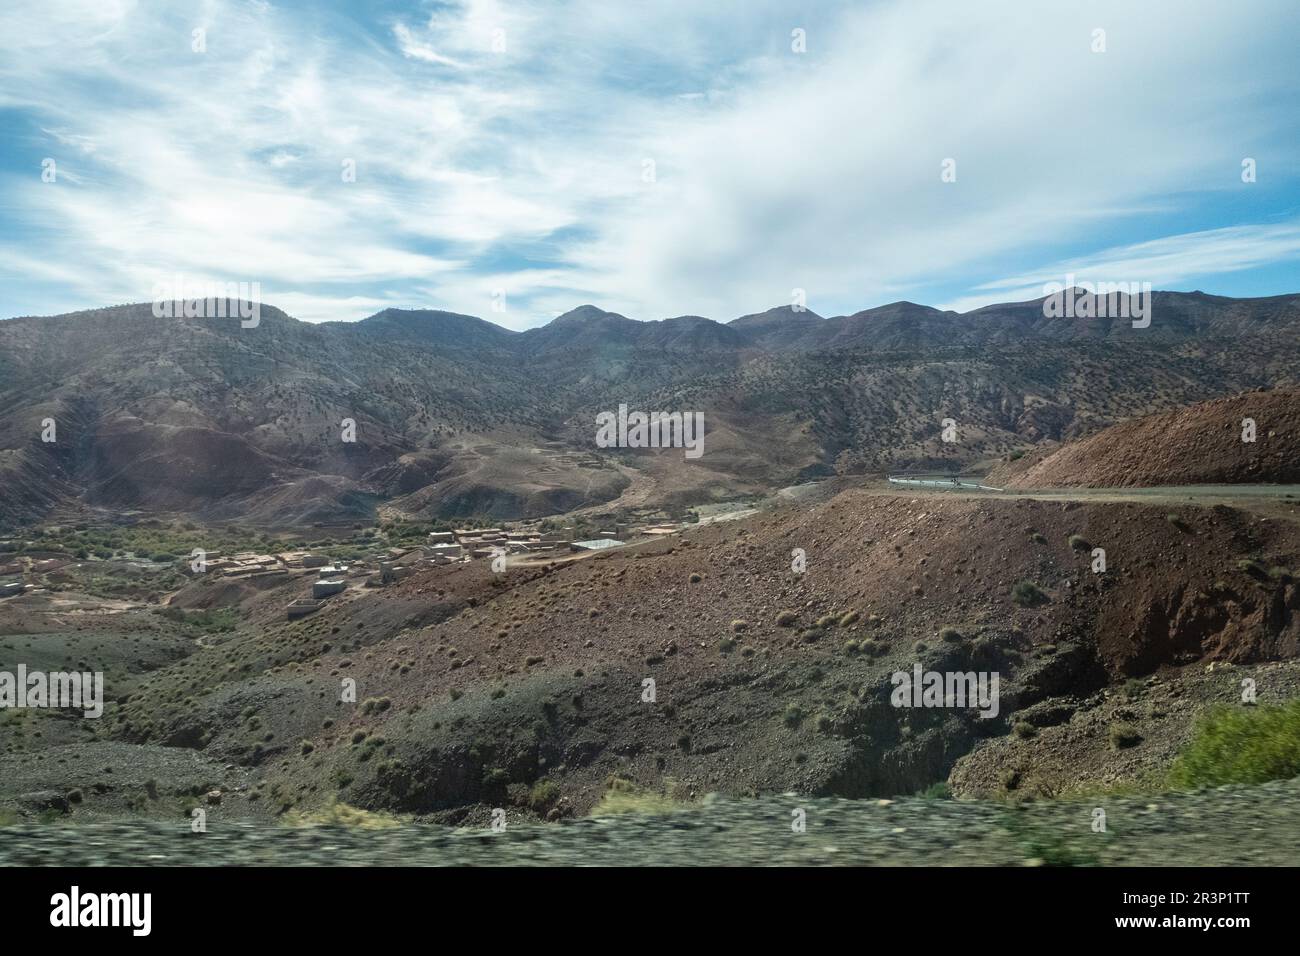 Vista panoramica delle montagne dell'Atlante in Marocco e delle sue strade curve Foto Stock